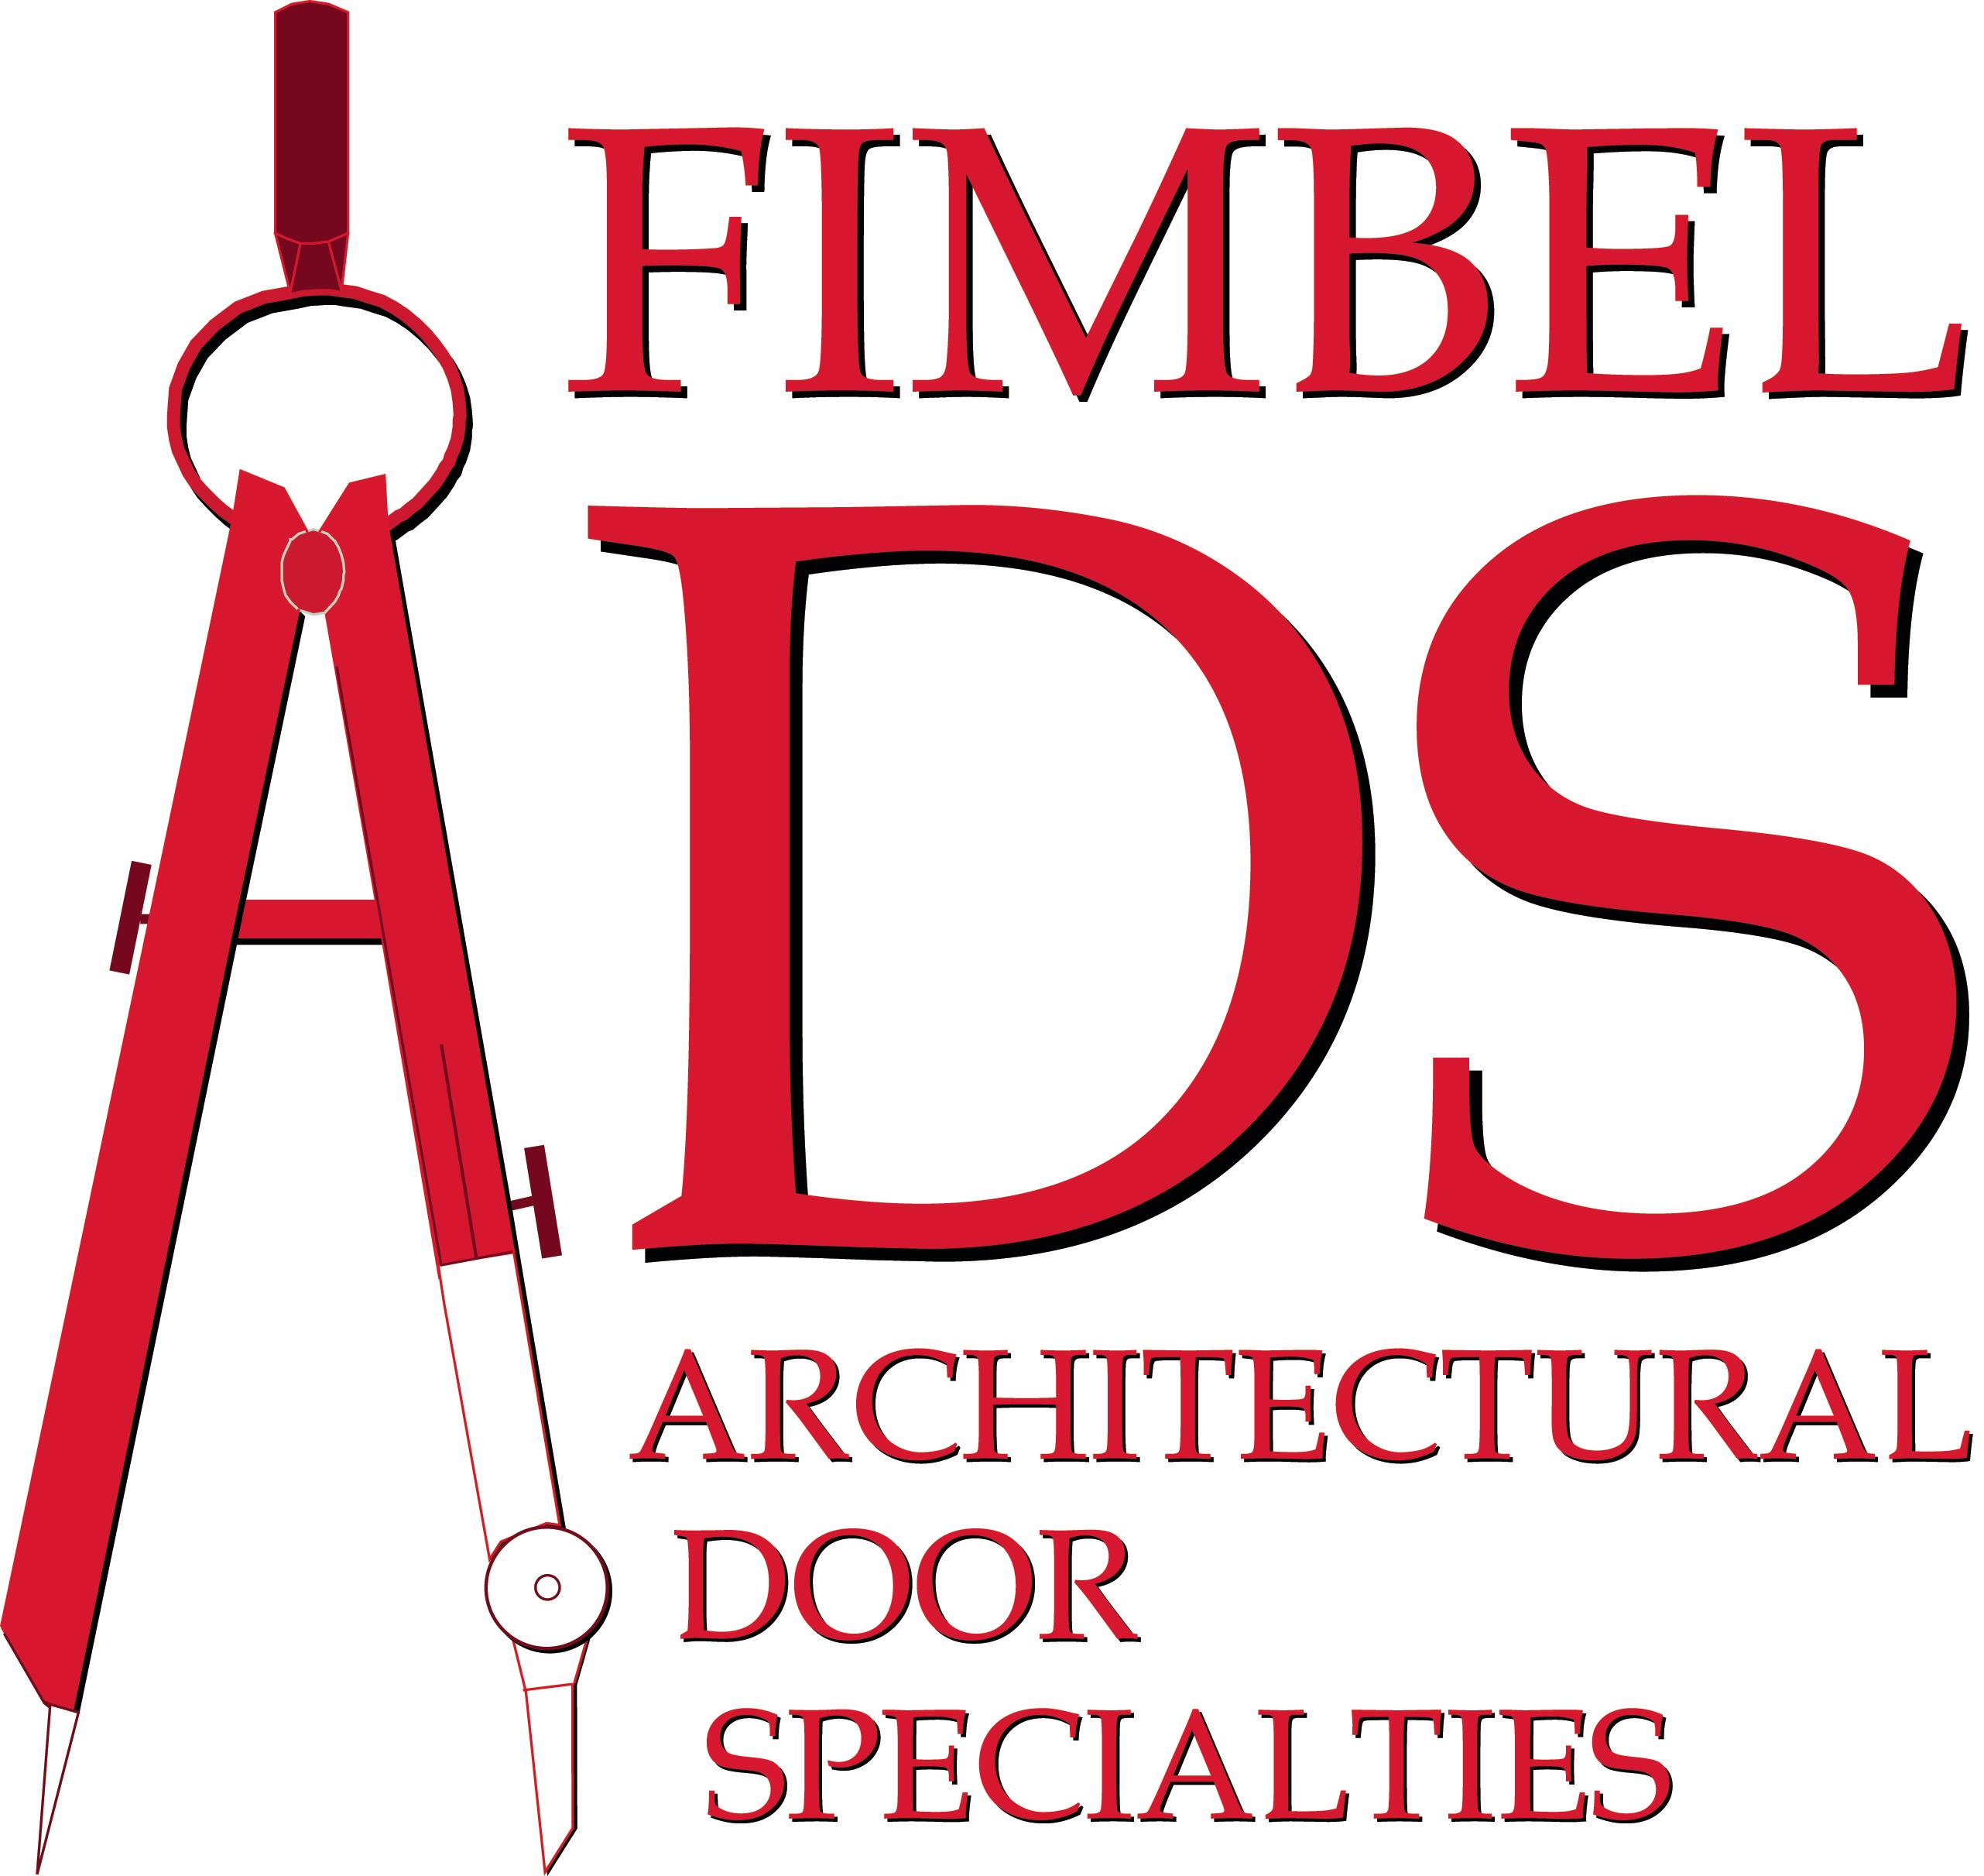 Fimbel ADS Architectural Door Specialities